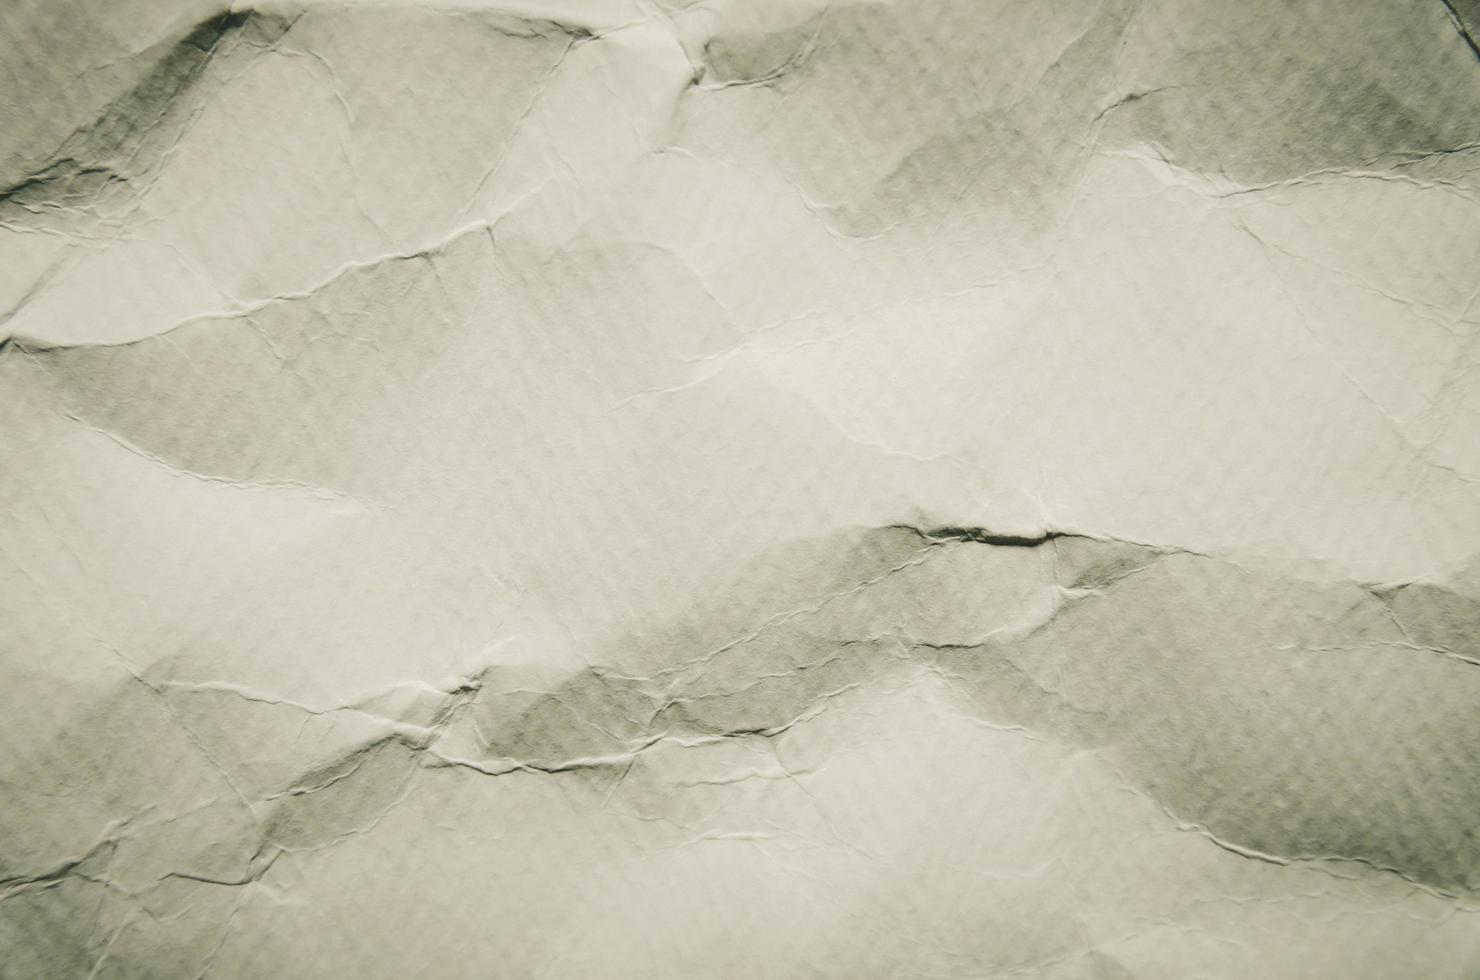 witte achtergrond en behang door verfrommeld papier textuur. foto